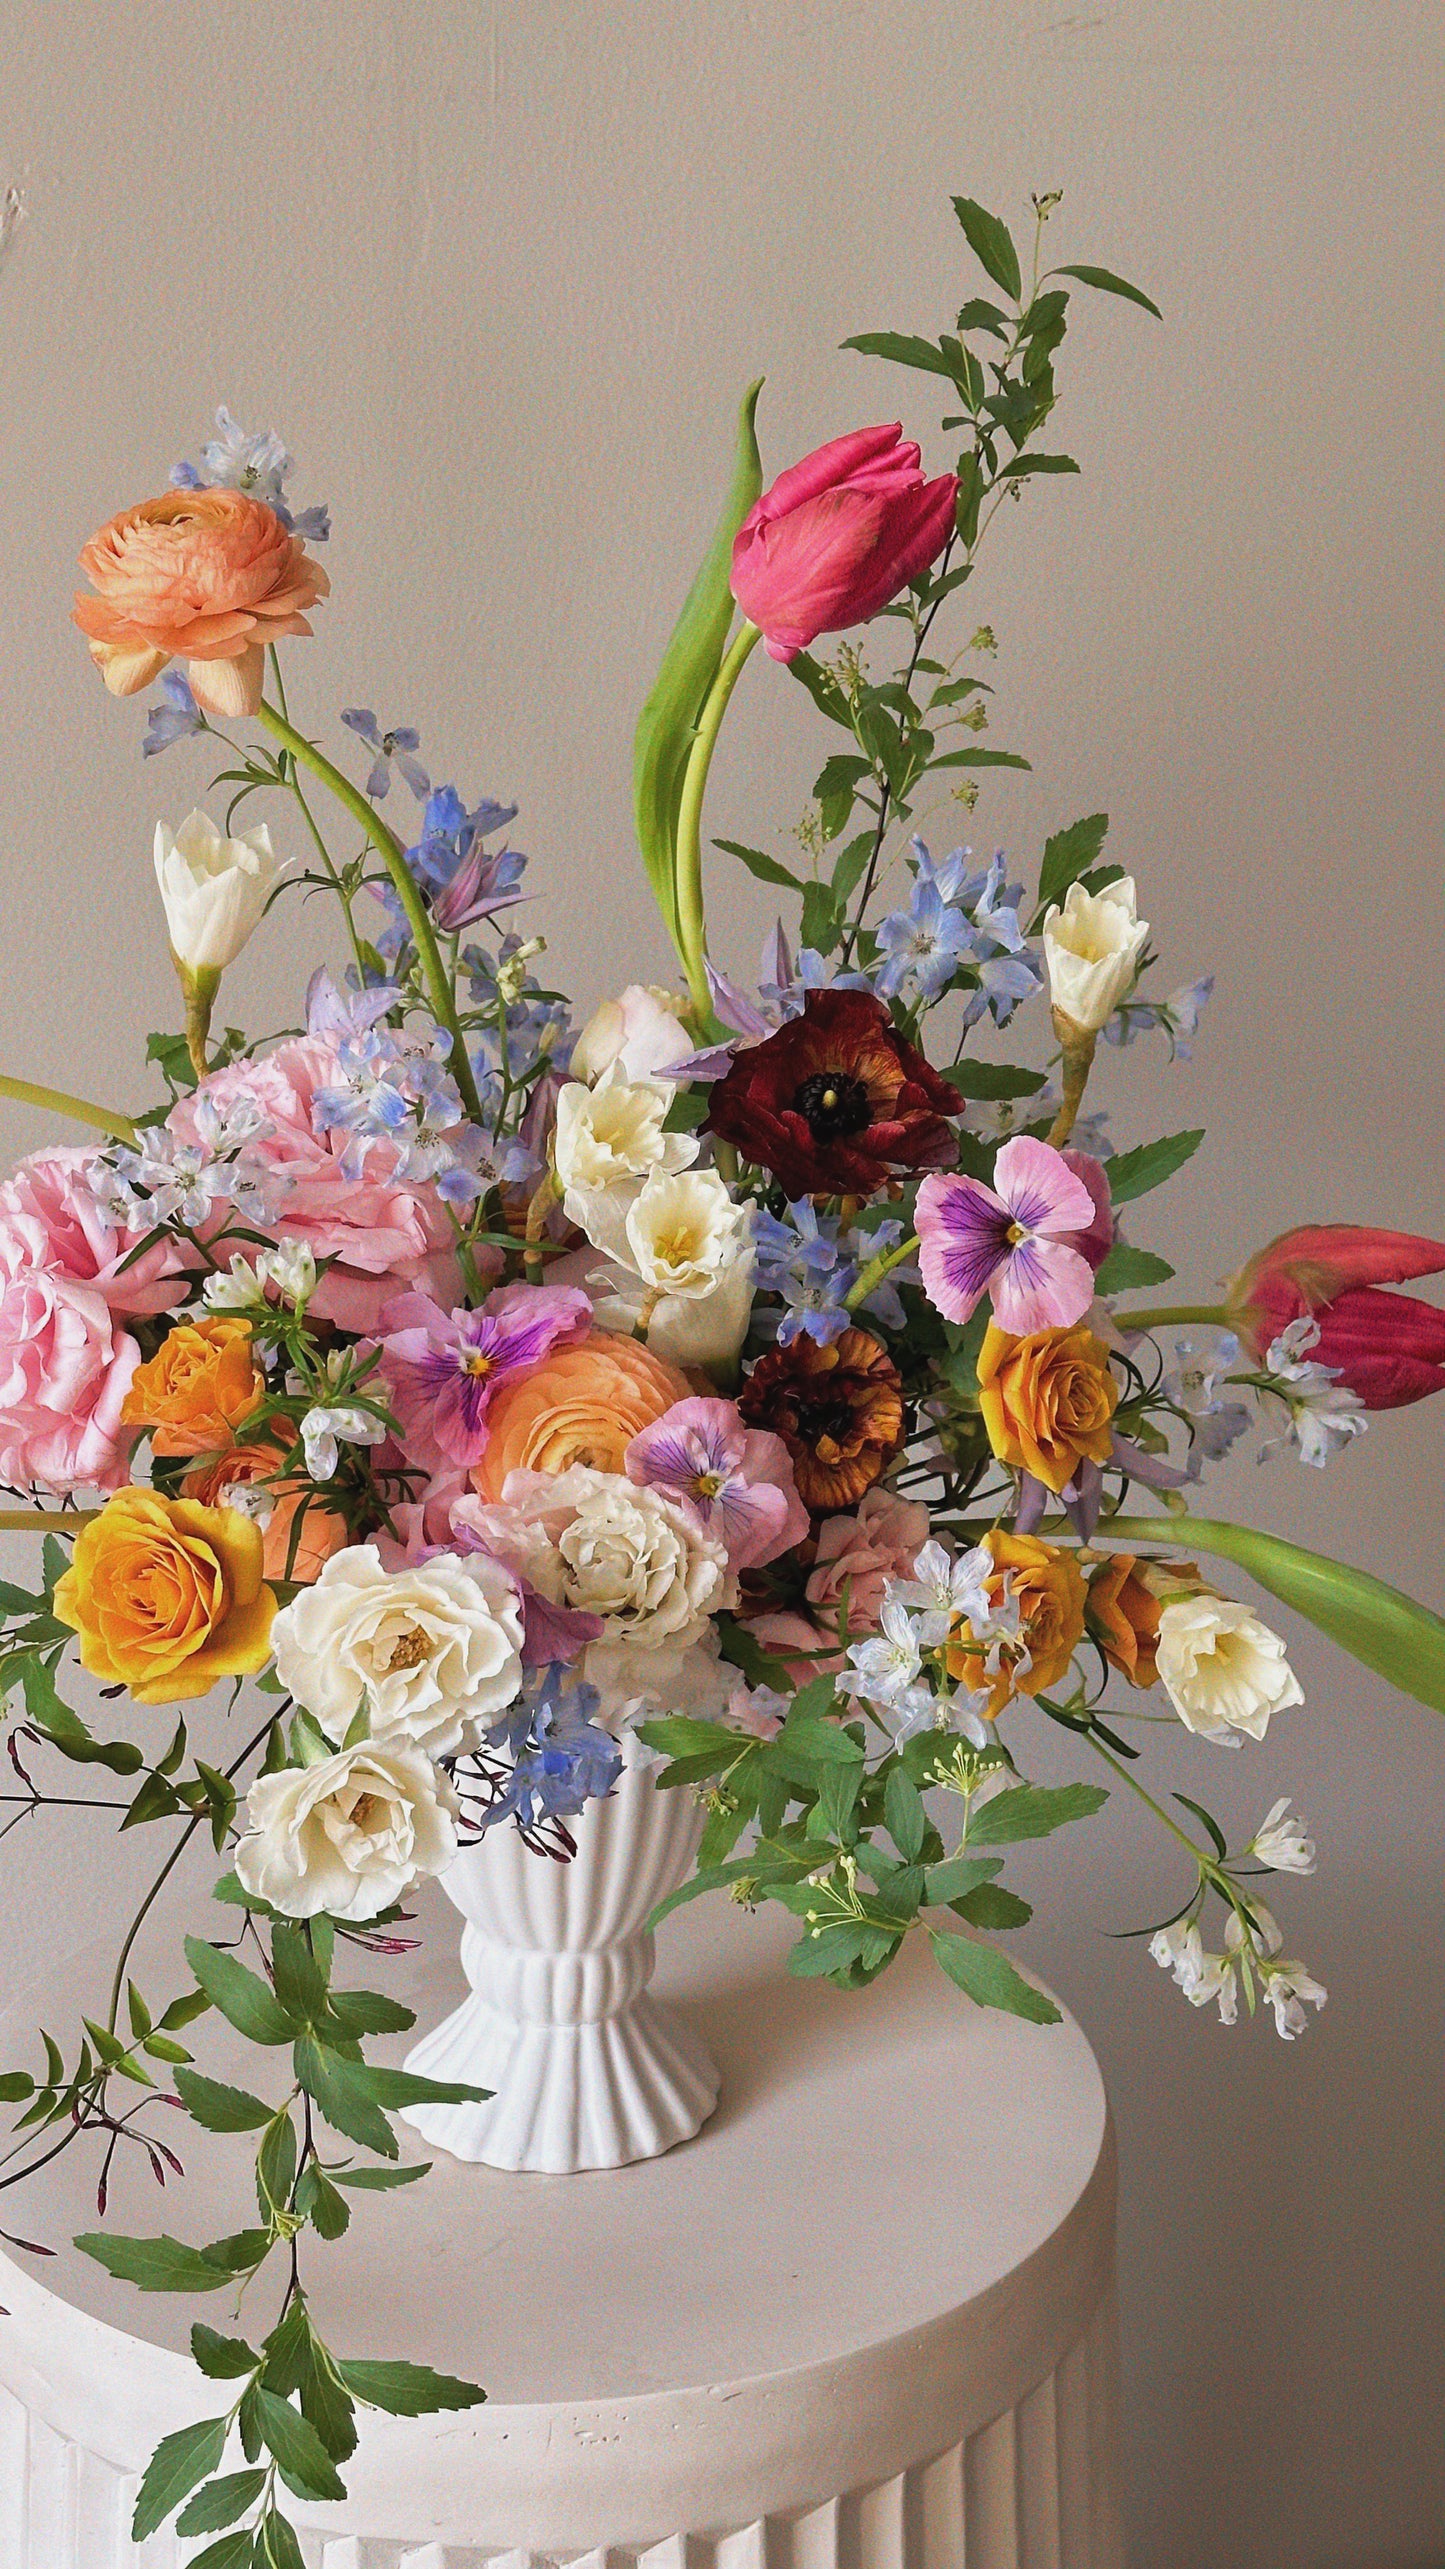 Mother's Day Arrangement - In Vase